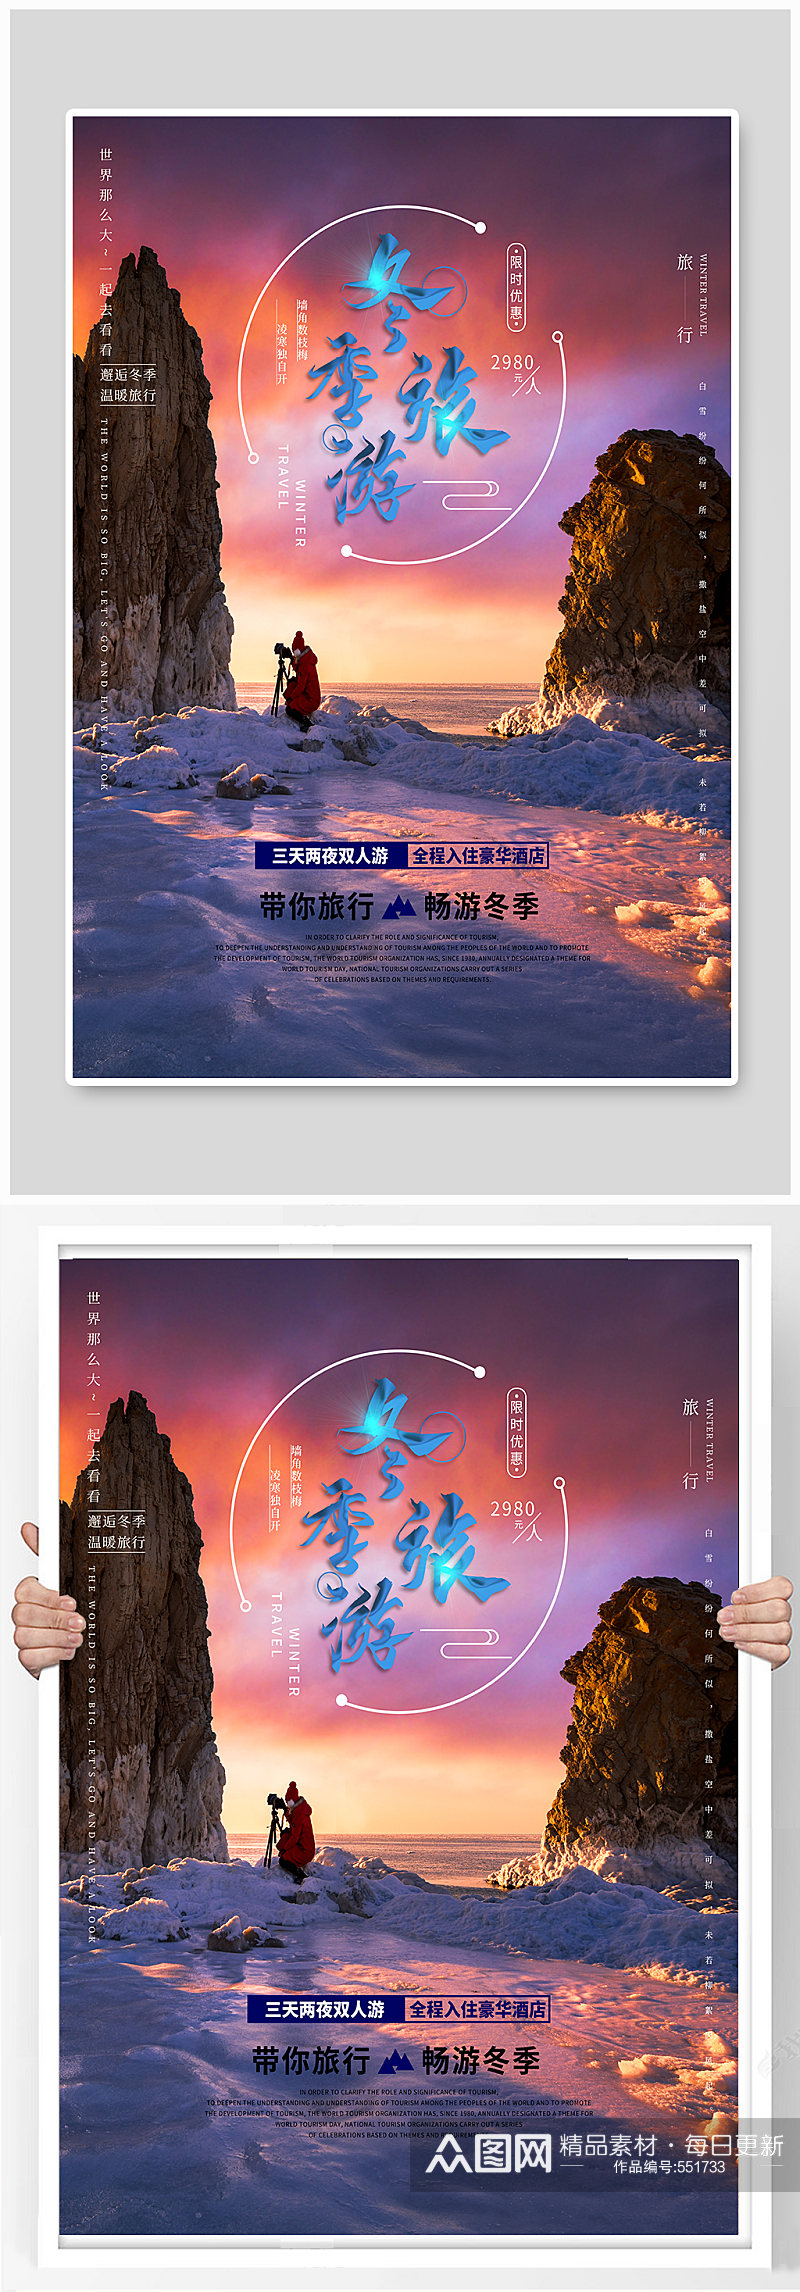 冬季雪景旅游宣传海报素材